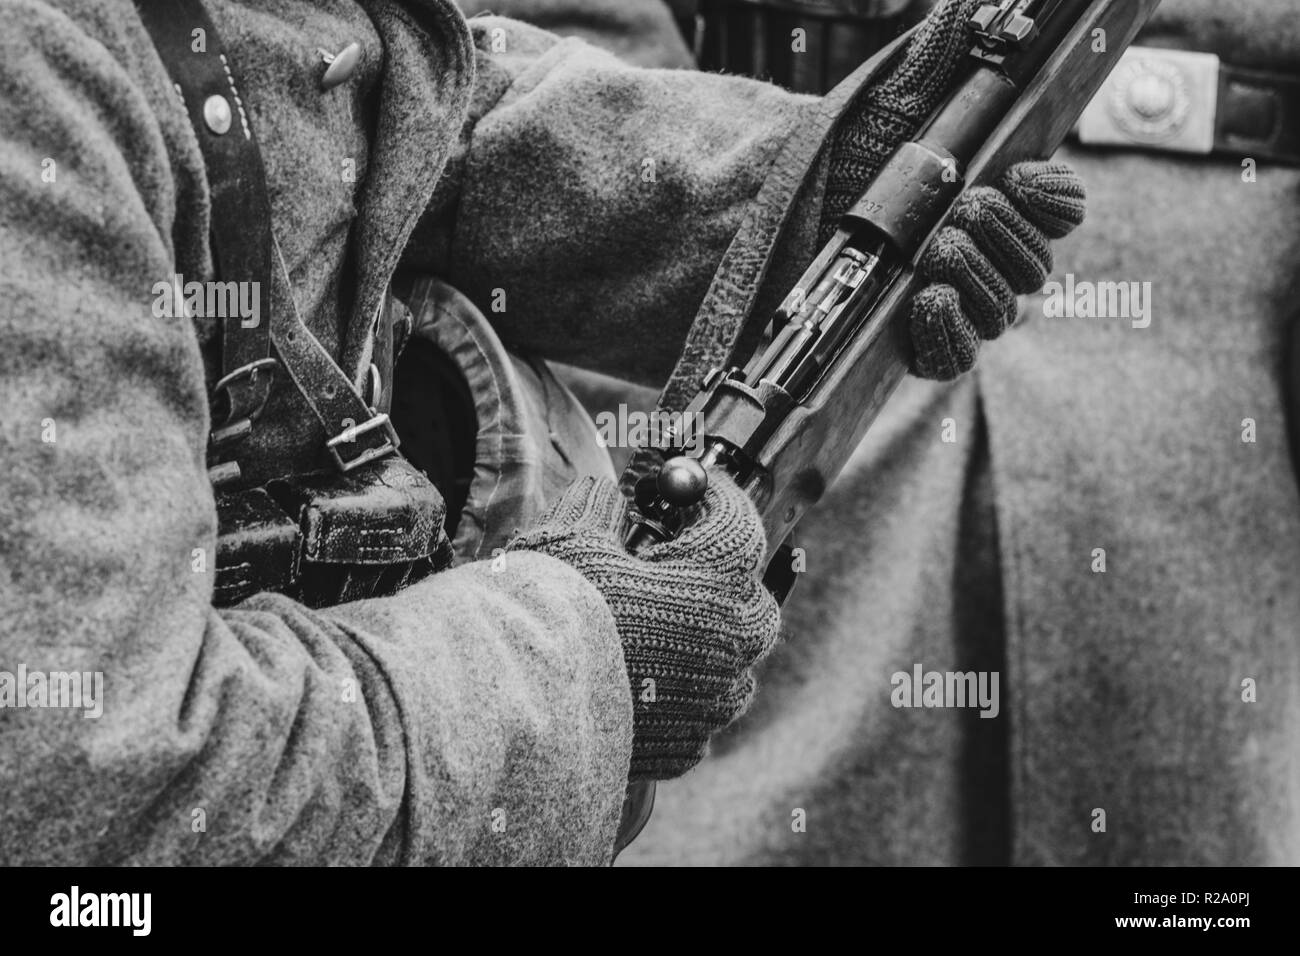 Mauser Waffe in den Händen der Wehrmacht Soldat im Zweiten Weltkrieg, die Schraube gespannt ist. Schwarzweiß gedreht Stockfoto